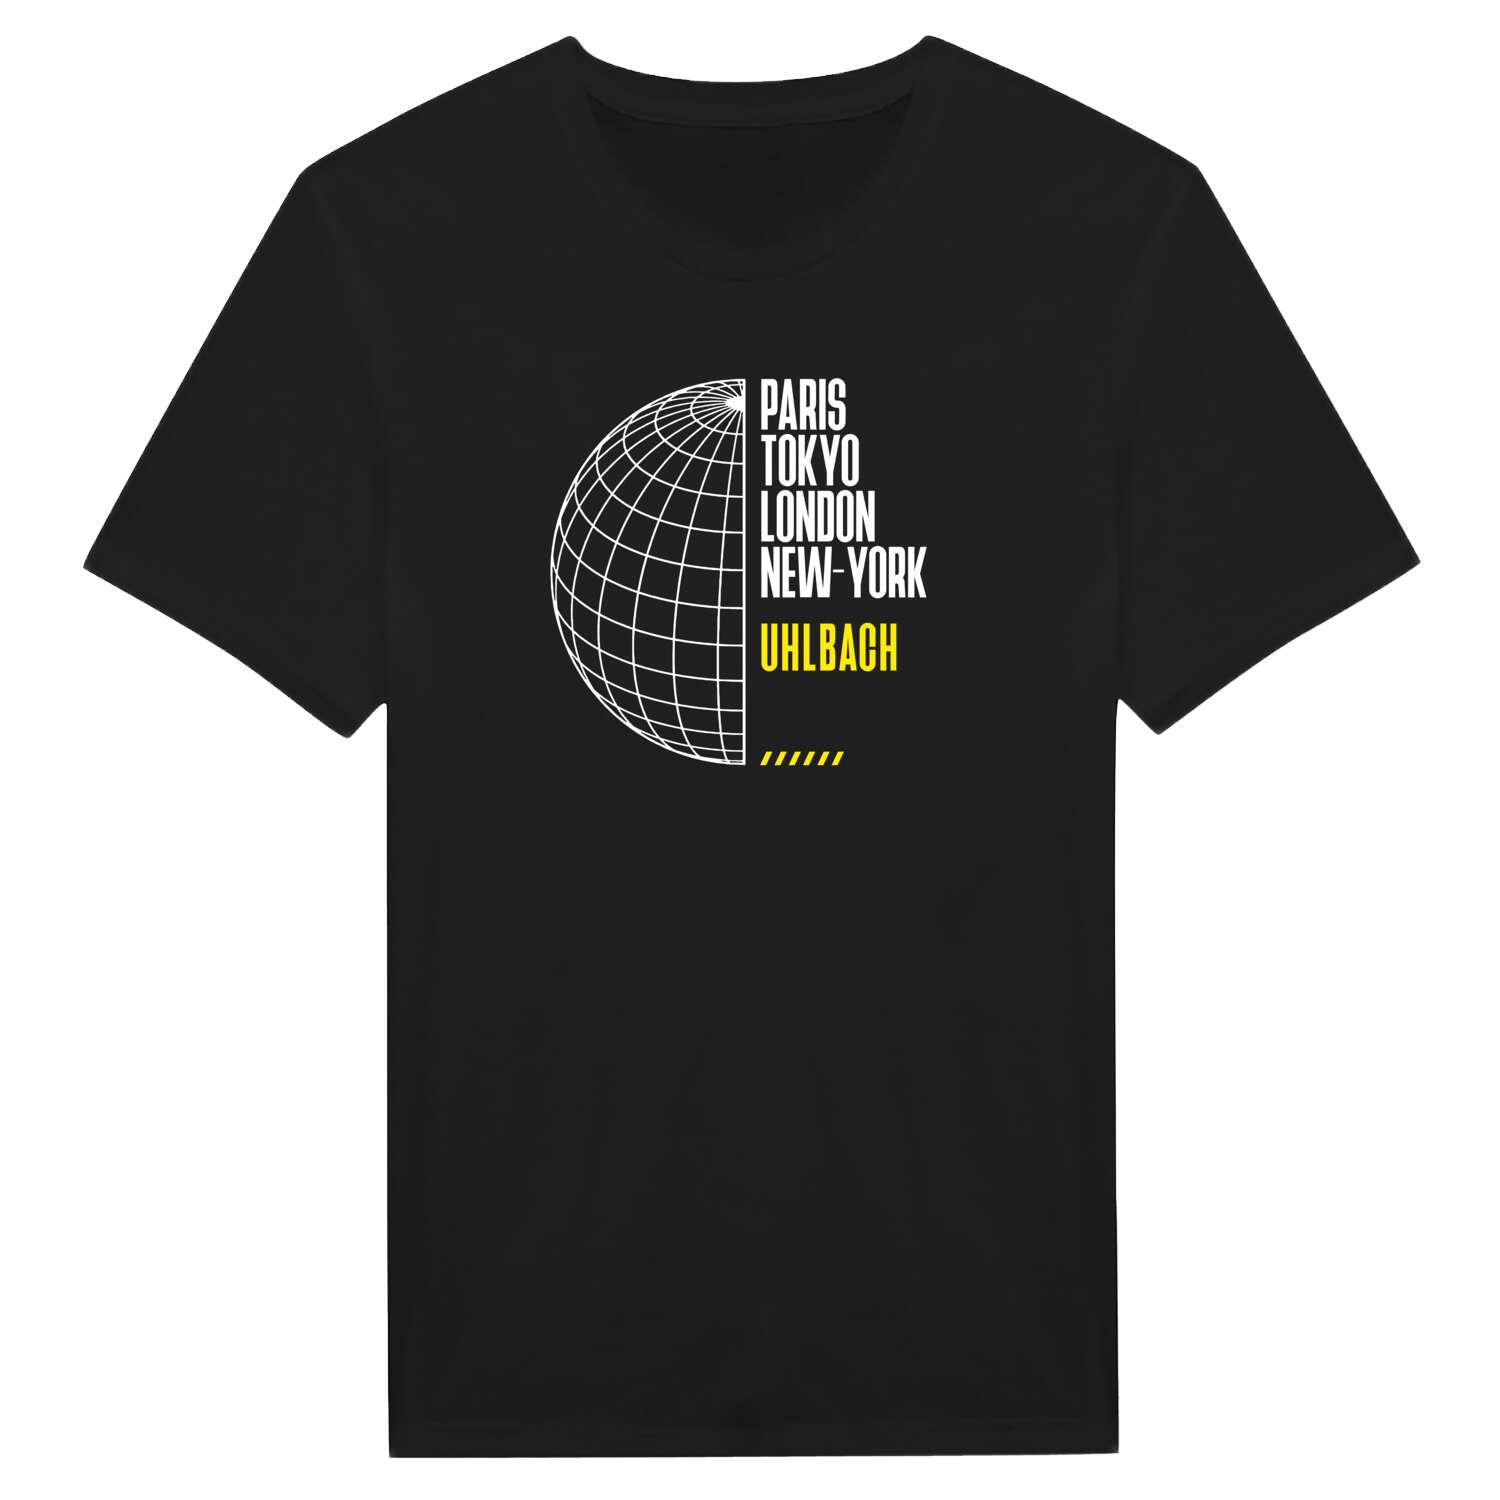 Uhlbach T-Shirt »Paris Tokyo London«